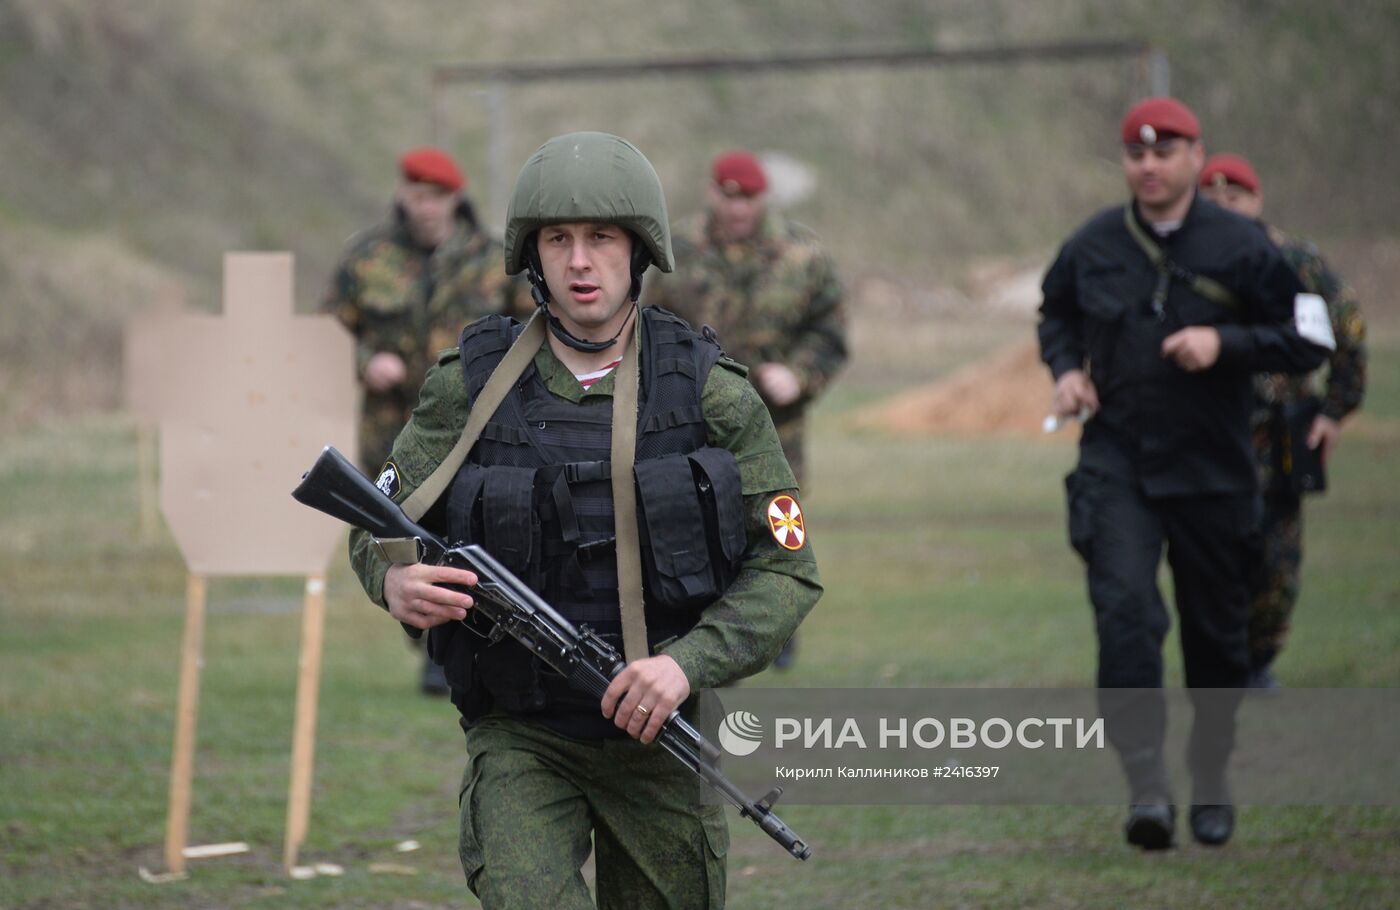 Комплексное практическое занятие с представителями воинских частей России